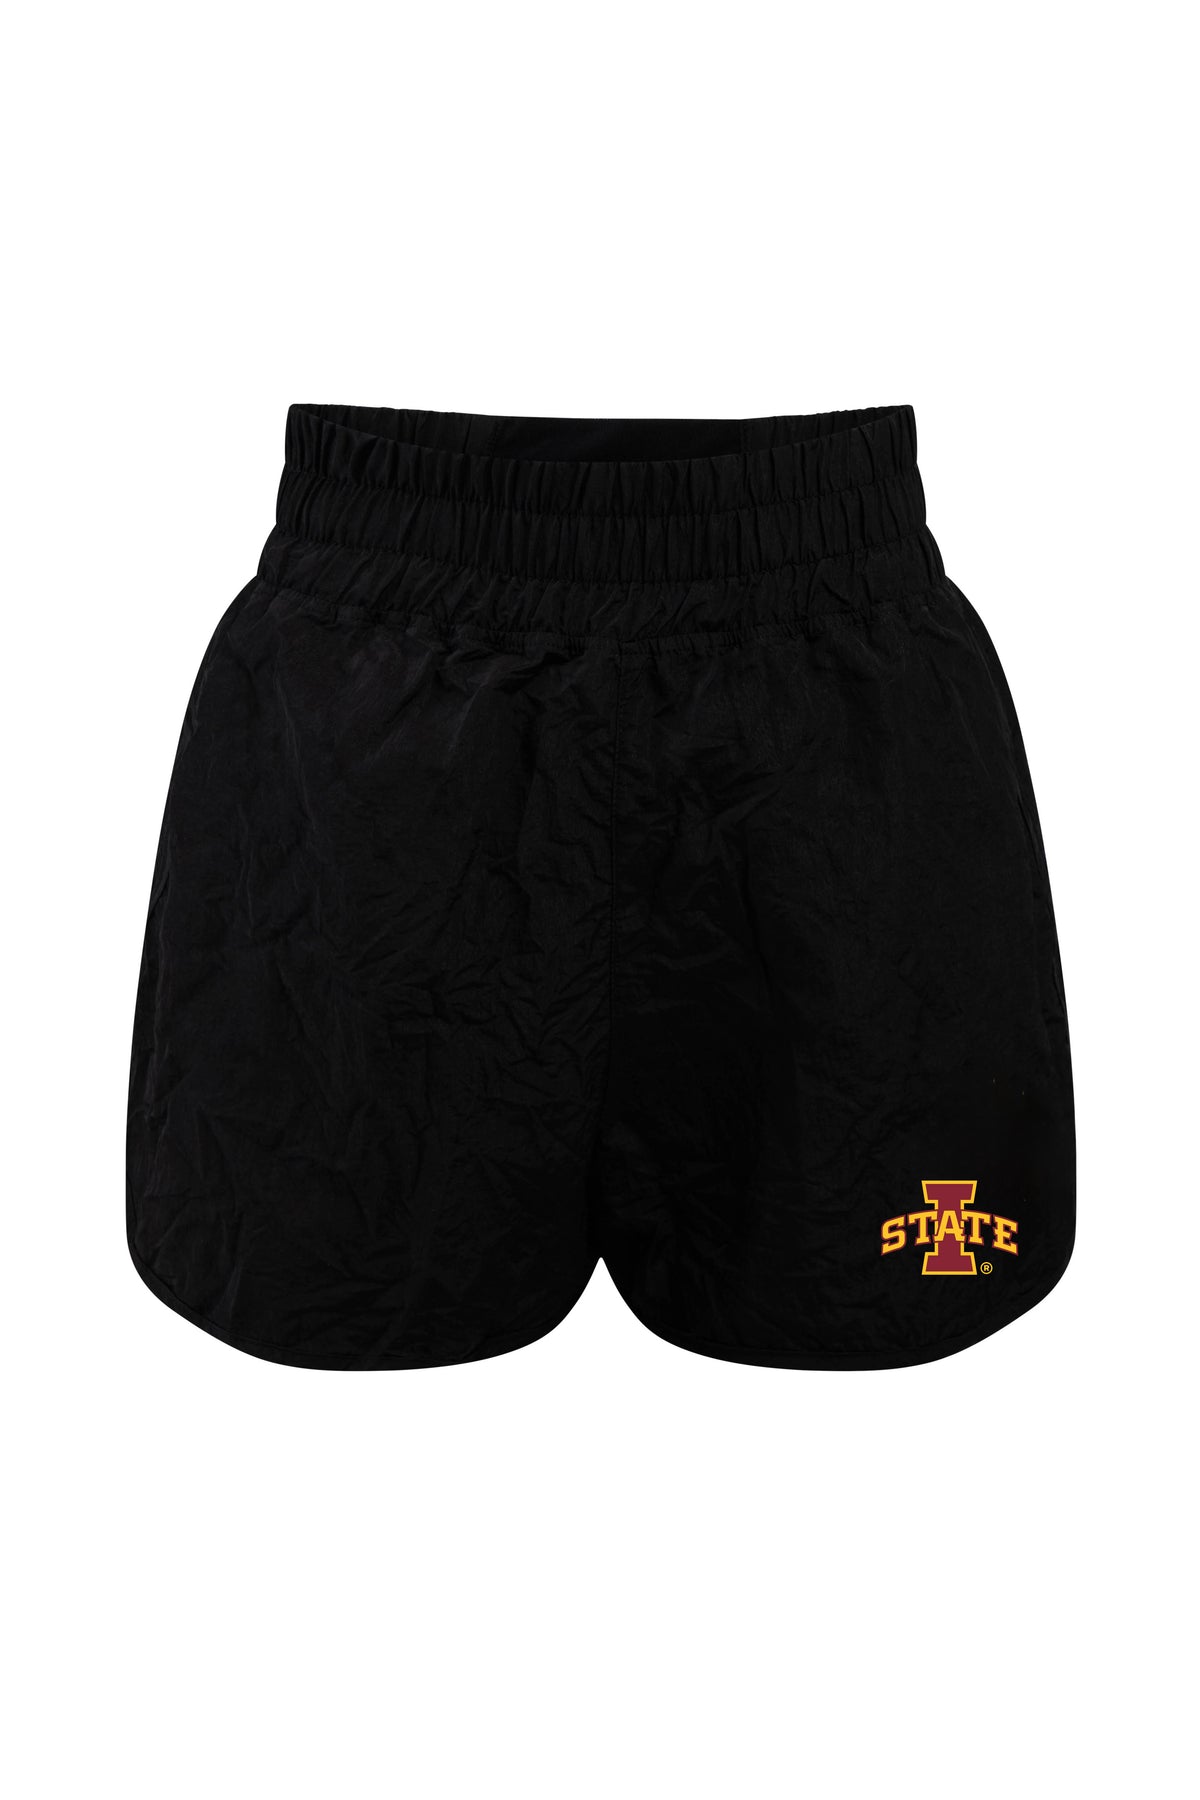 Iowa State University Boxer Short